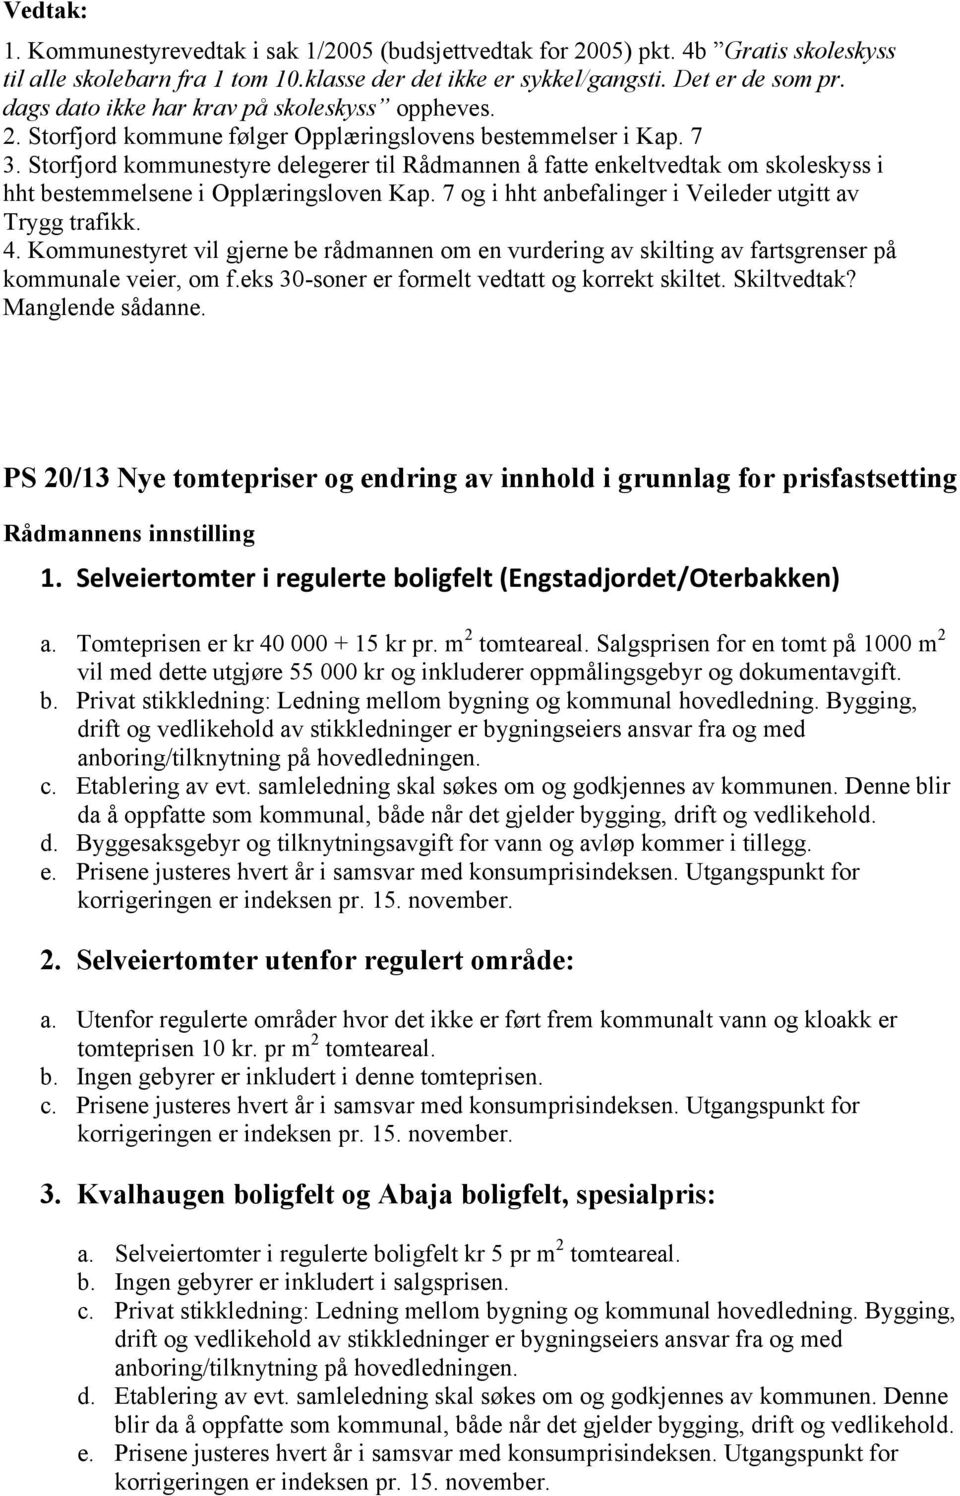 Storfjord kommunestyre delegerer til Rådmannen å fatte enkeltvedtak om skoleskyss i hht bestemmelsene i Opplæringsloven Kap. 7 og i hht anbefalinger i Veileder utgitt av Trygg trafikk. 4.